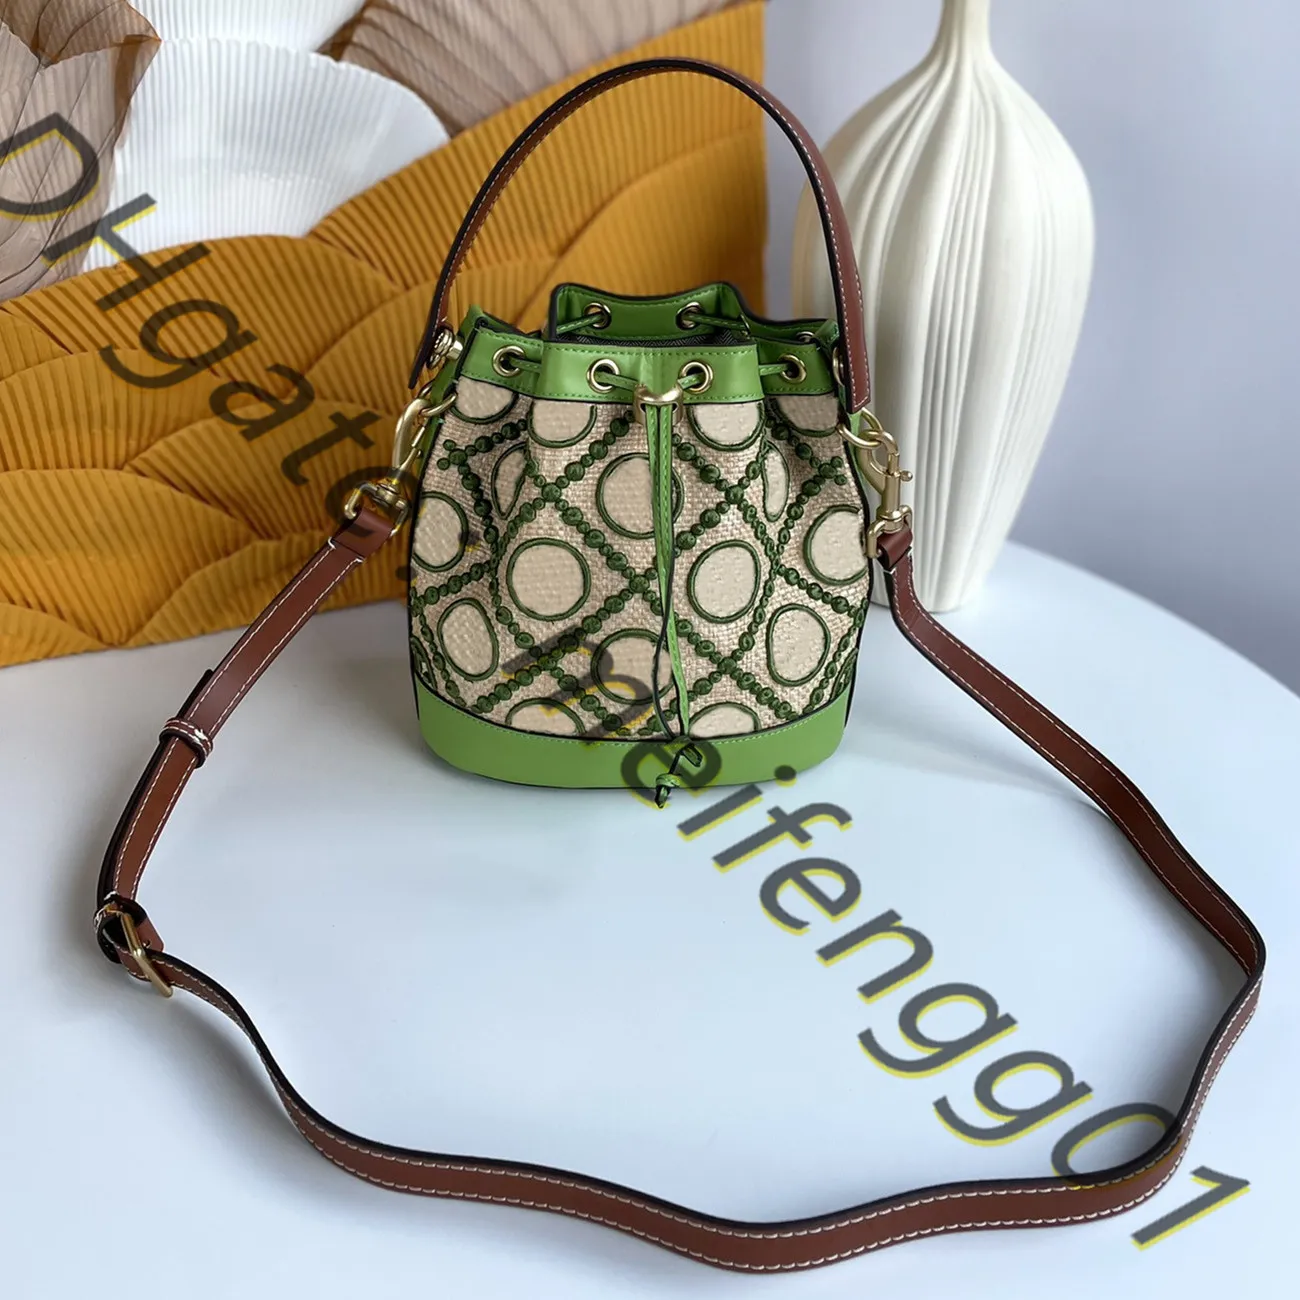 ファッショナブルな化粧品バッグスタイル均一なバッグユニークなデザイン新しいバケツ型ハンドバッグショルダーバッグクロスボディ財布の鏡高品質チェスボードパターン旅行トート